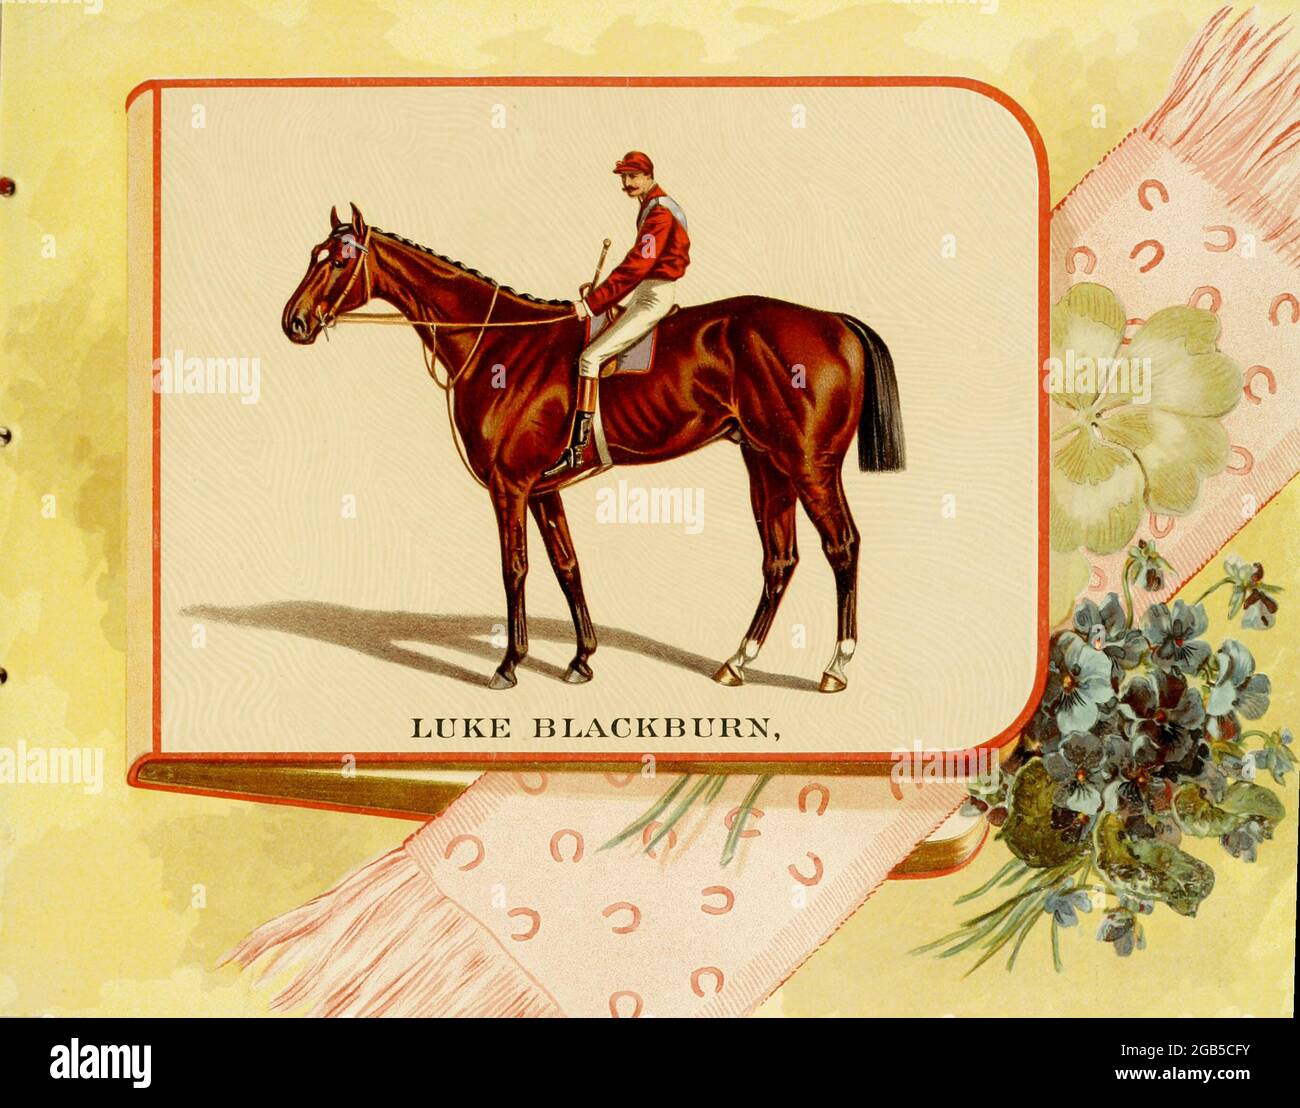 Luke Blackburn (1877-1904) fue un caballo de raza pura, nacido y criado en Tennessee por el Capitán James Franklin. Fue introducido en el Salón de la Fama de las Carreras de Caballos de Estados Unidos en 1956. Del ' Álbum de famosos caballos de carrera americanos e ingleses ' de Kinney Bros Publicado en Nuevo Tu en 1888 por Kinney Brothers para avanzar en las ventas de sus marcas de cigarrillos. Kinney Tobacco Company fue una empresa estadounidense de fabricación de cigarrillos que creó la marca de cigarrillos Sweet Caporal y la promovió con tarjetas comerciales de colección. Siendo un fabricante de cigarrillos líder del 1870-1880s, se fusionó en 1890 en Foto de stock